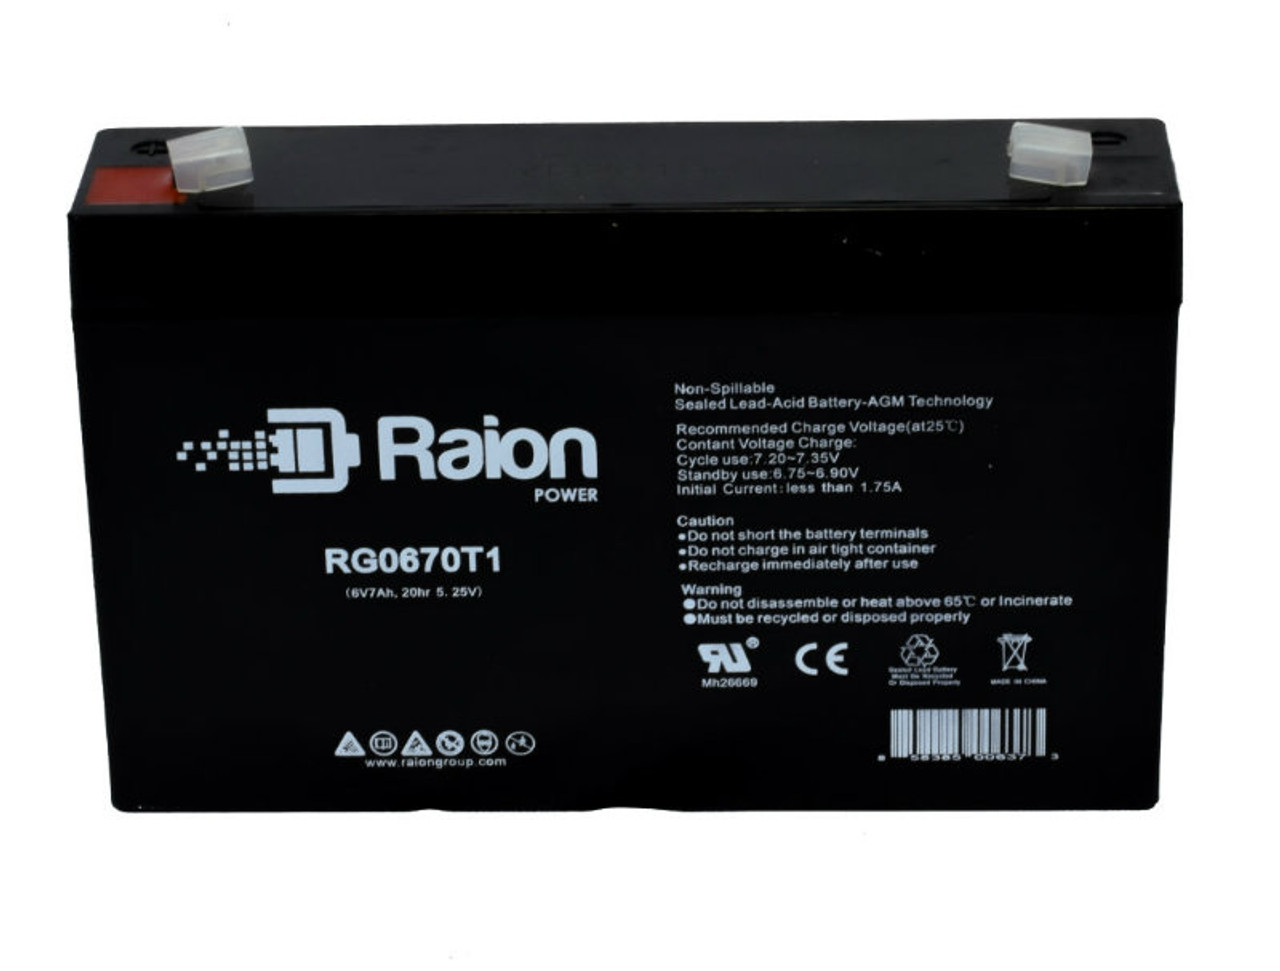 Raion Power RG0670T1 SLA Battery for Power Source WP7-6 (91-050) OEM Battery